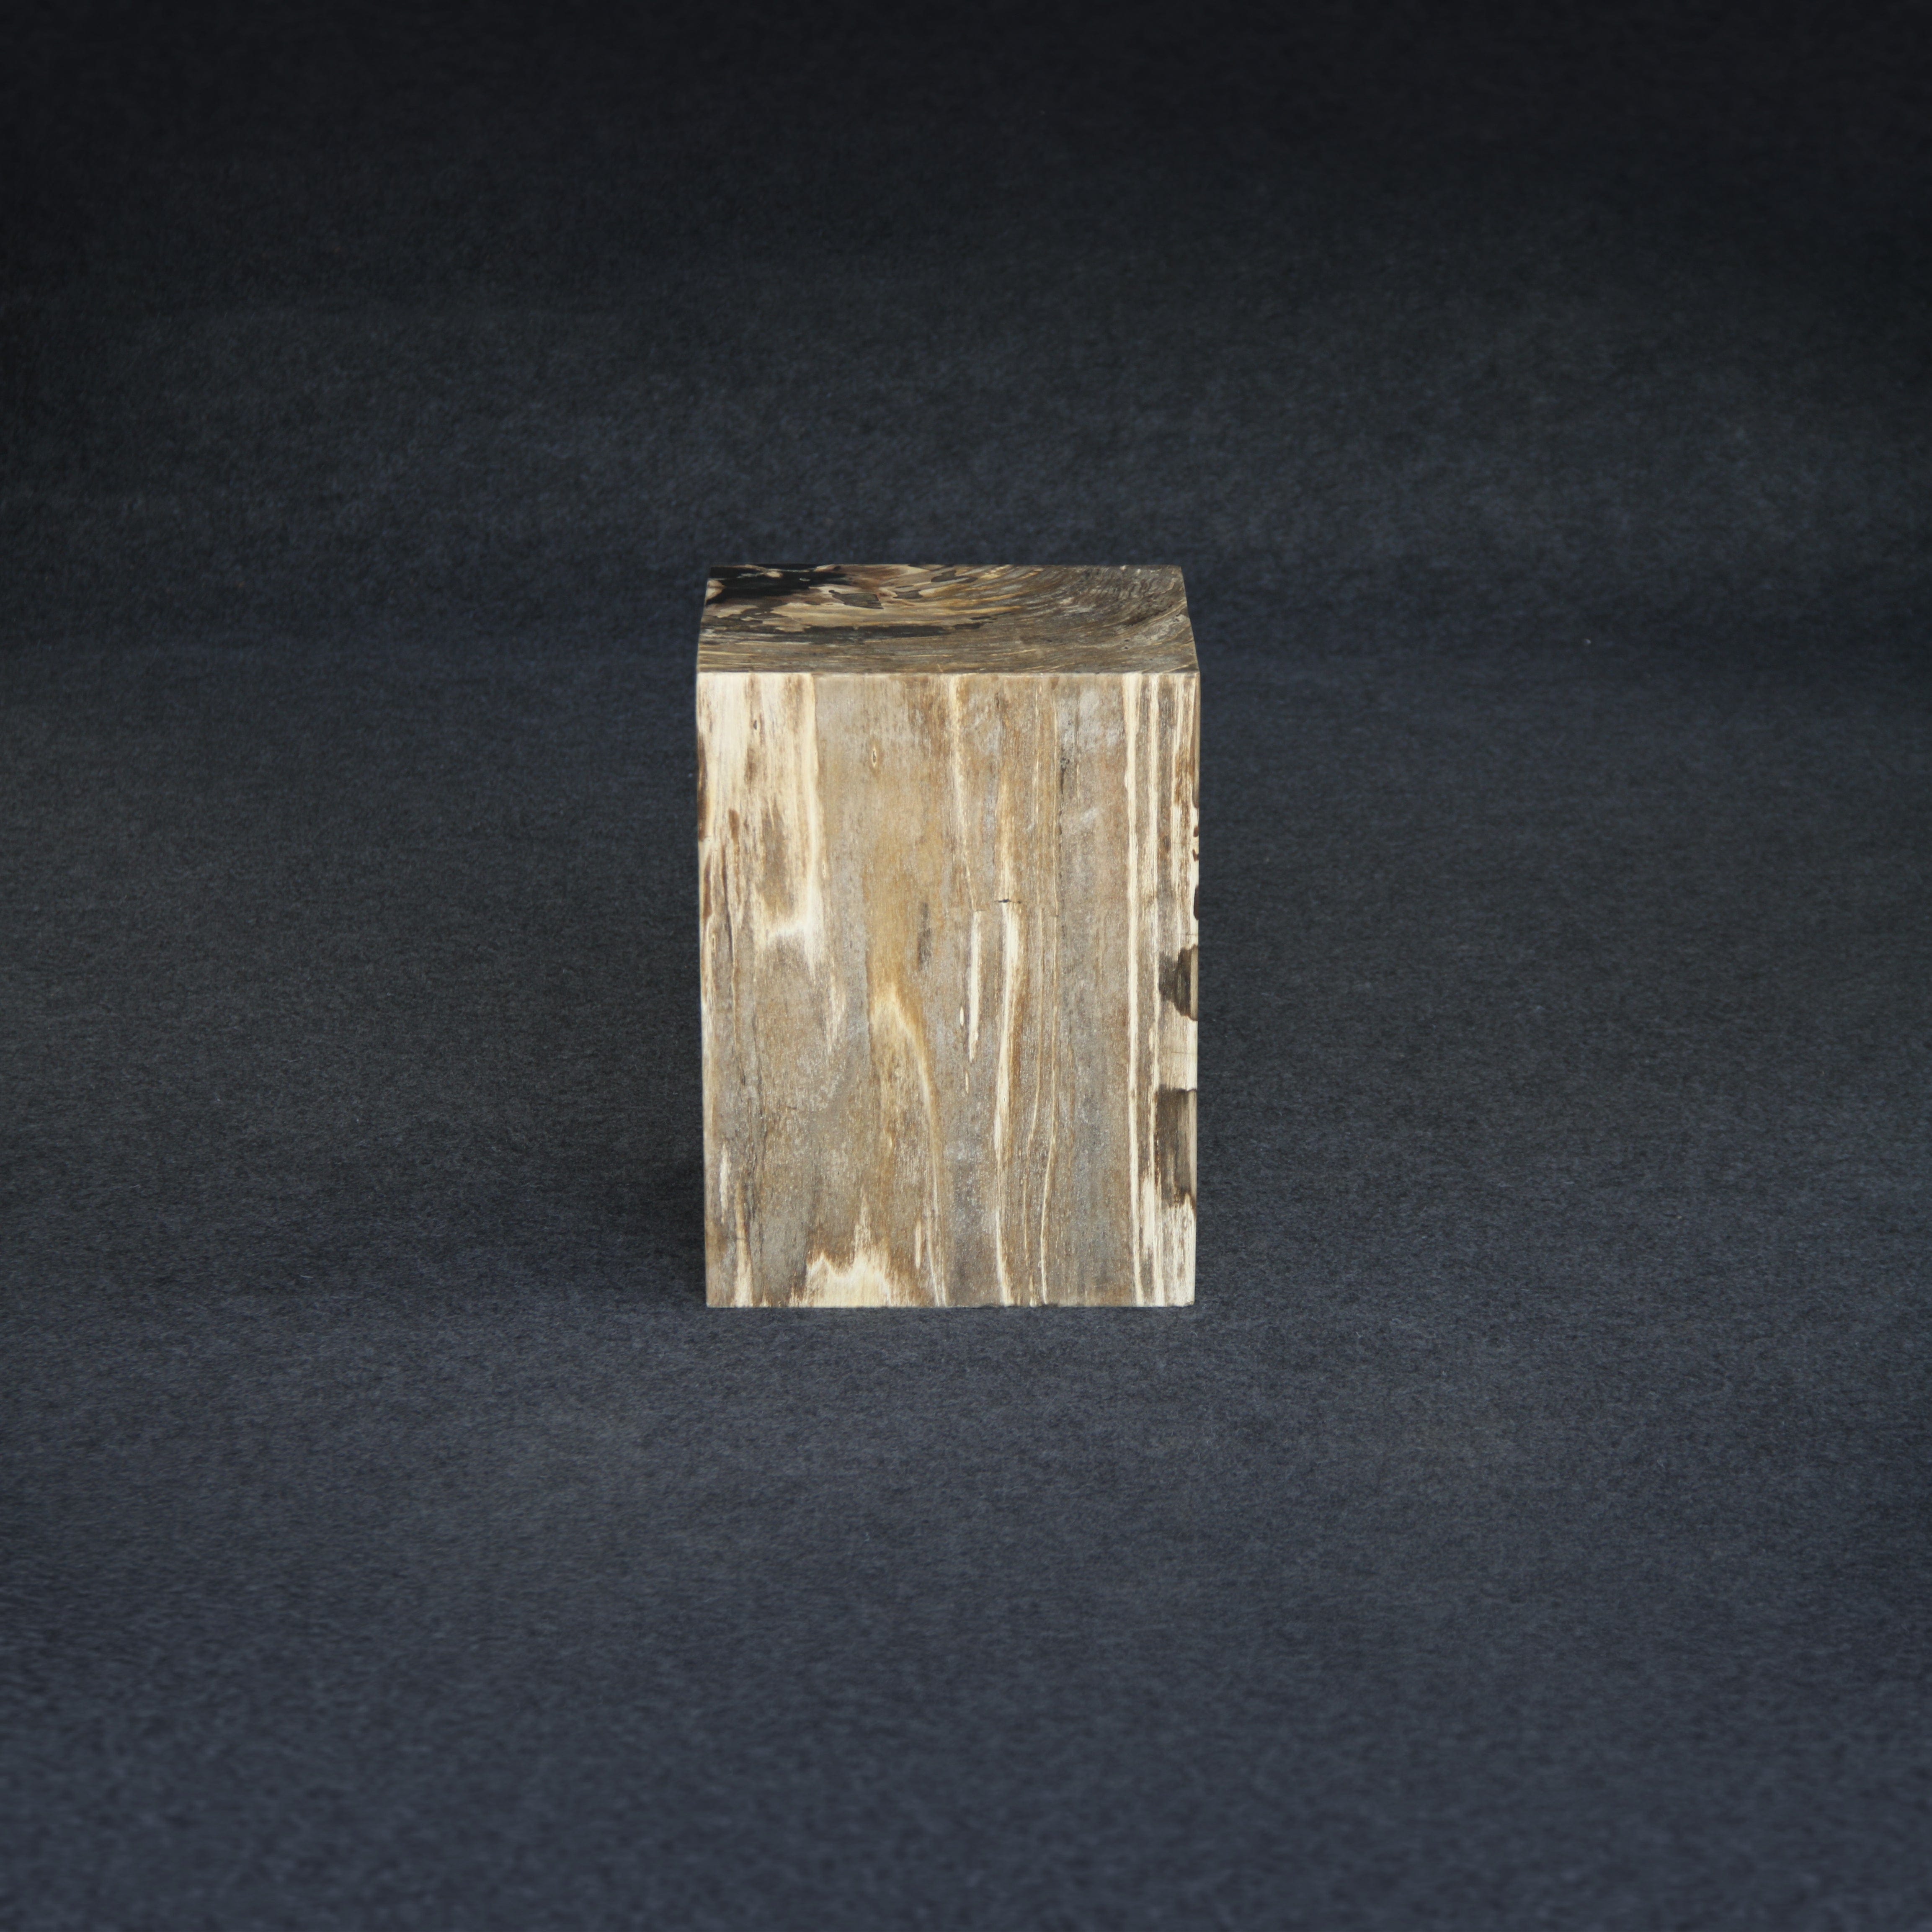 Kalifano Petrified Wood Petrified Wood Square Stump / Stool 16" / 198 lbs PWSS6200.002